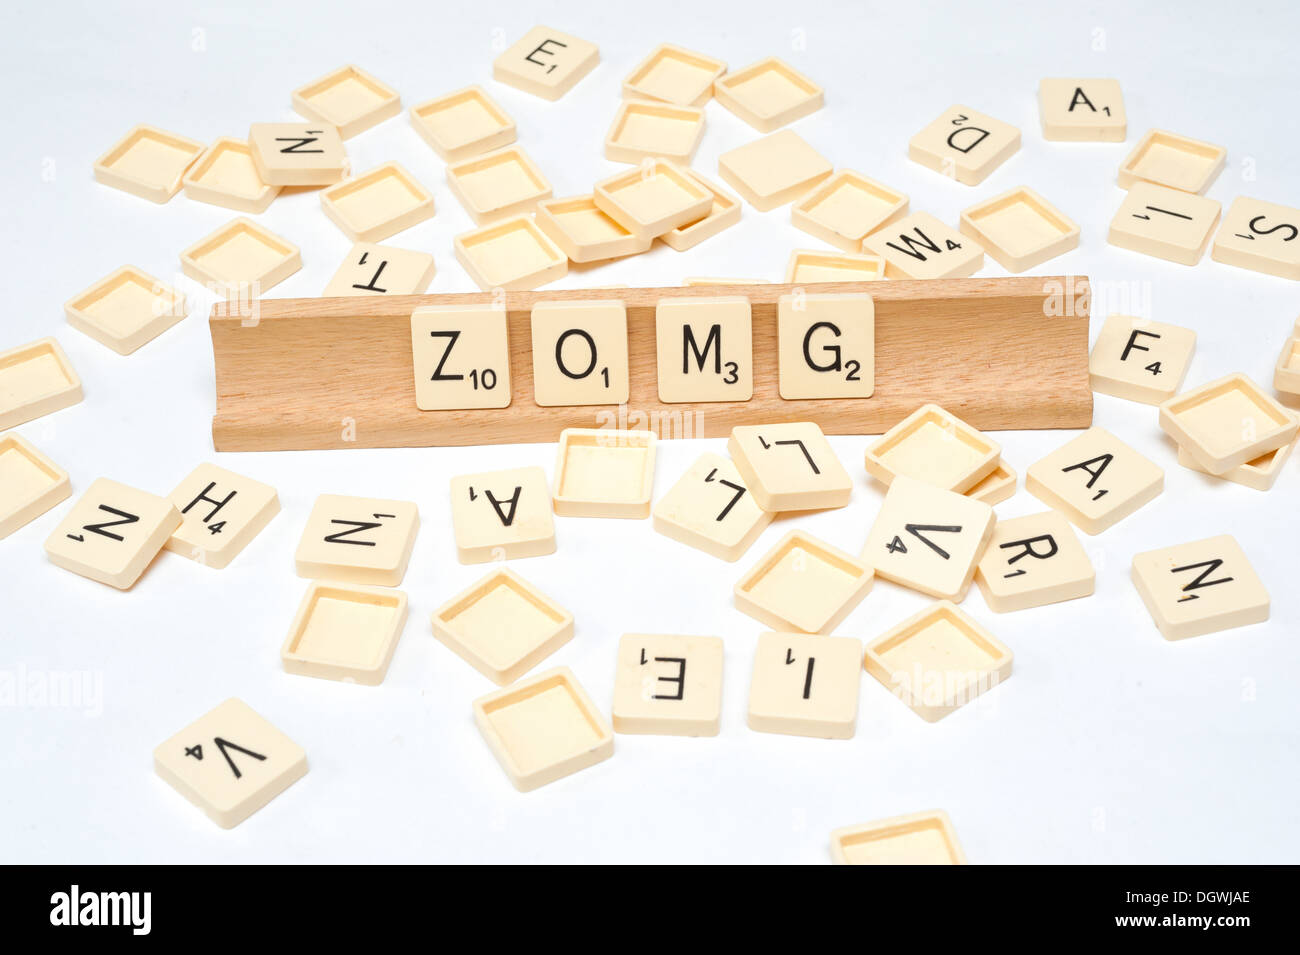 "ZOMG" escrito en el Scrabble mosaico Foto de stock